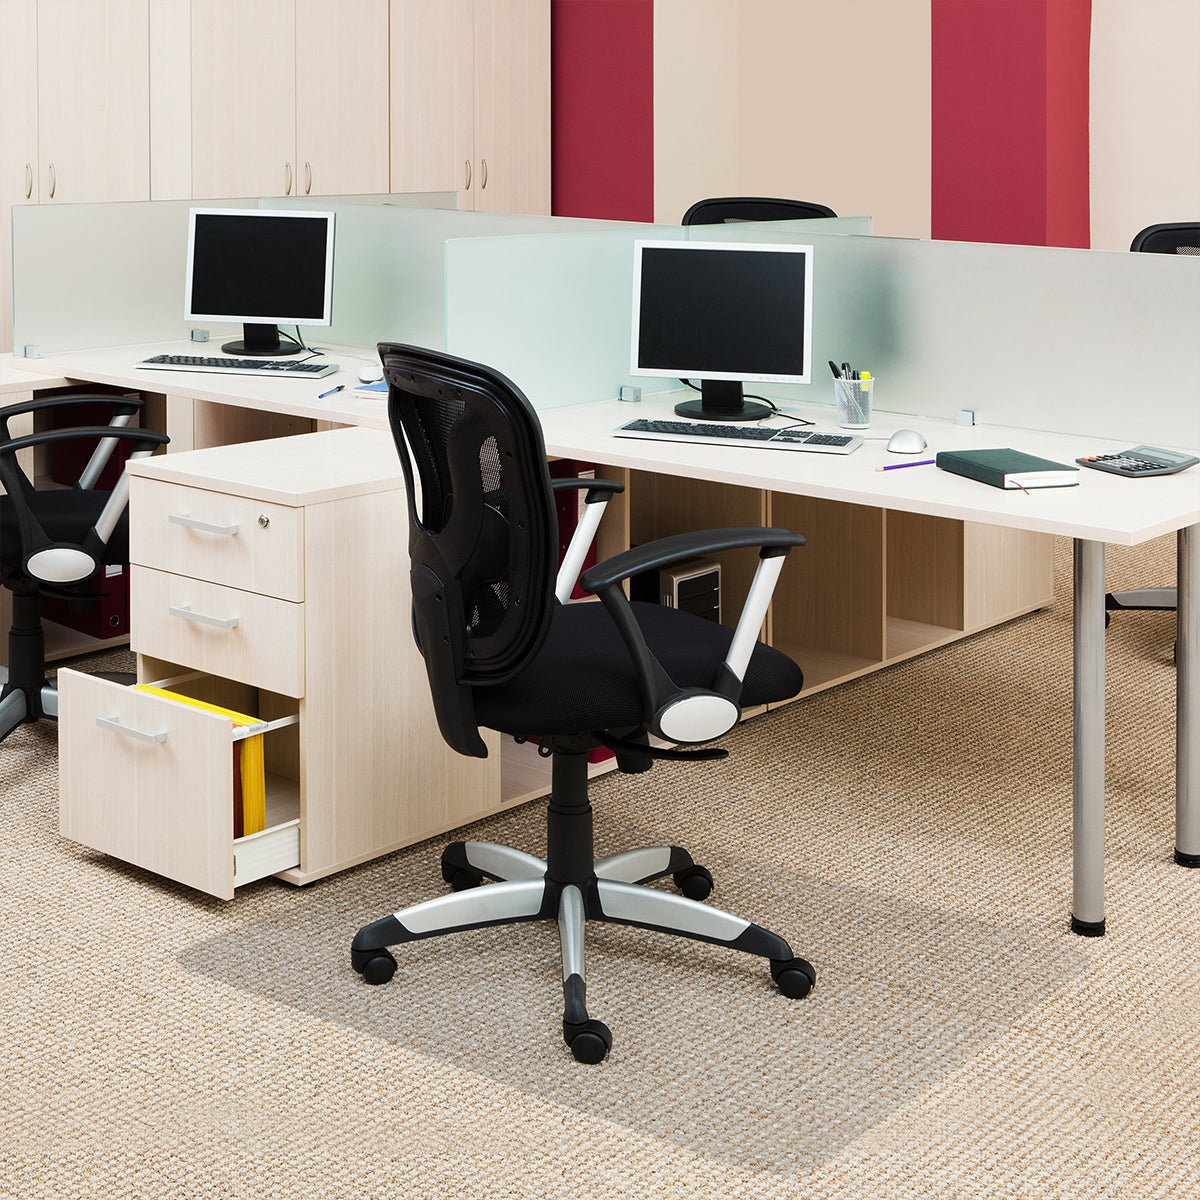  YRRA Bodenschutzmatte Teppich, Bürostuhl Teppichschoner,  rutschfeste Schutzmatte Bürostuhl für Parkett Laminat und  Fliesenboden,Schwarz,90x140cm